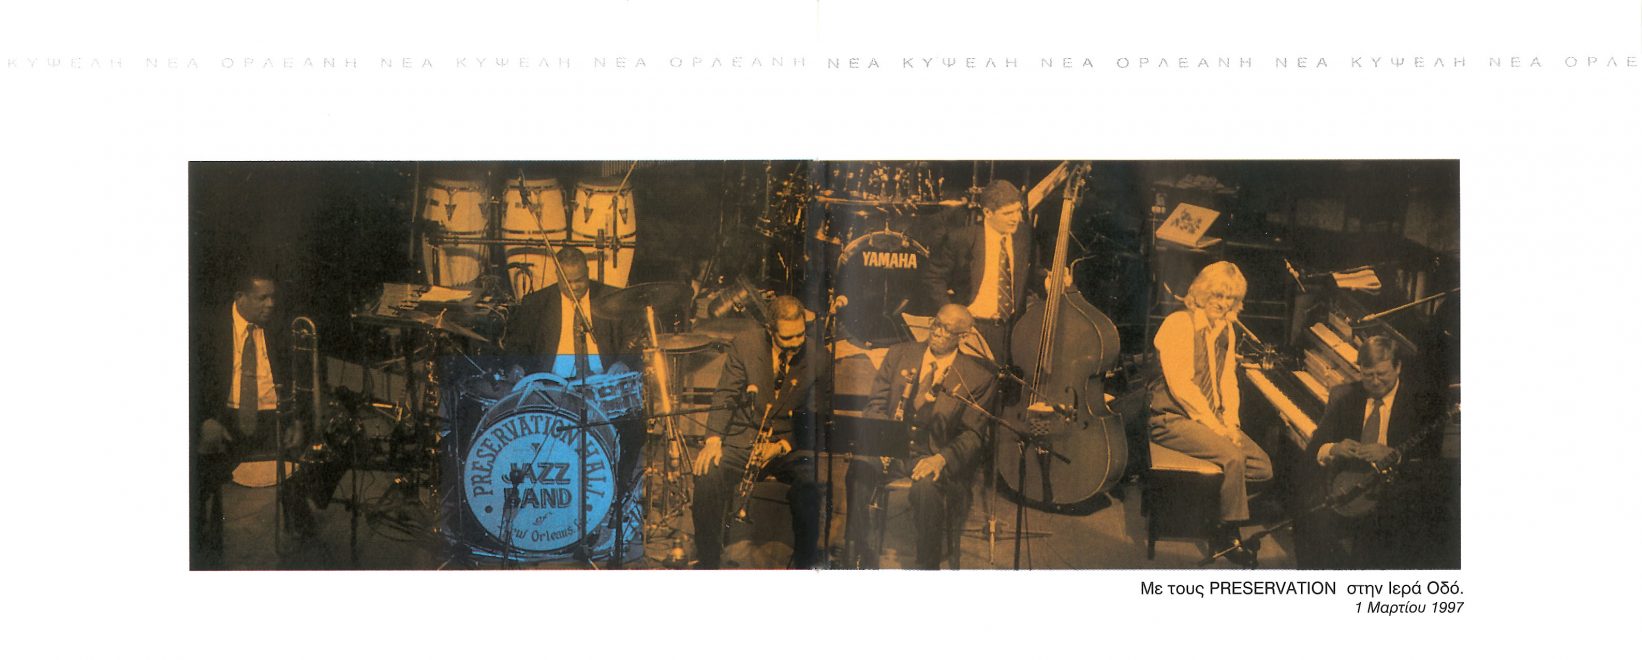 Φωτογραφία στο βιβλιαράκι του cd, με τον συνθέτη και τους «Preservation Hall Jazz Band» από την εμφάνισή τους στην Μουσική Σκηνή 